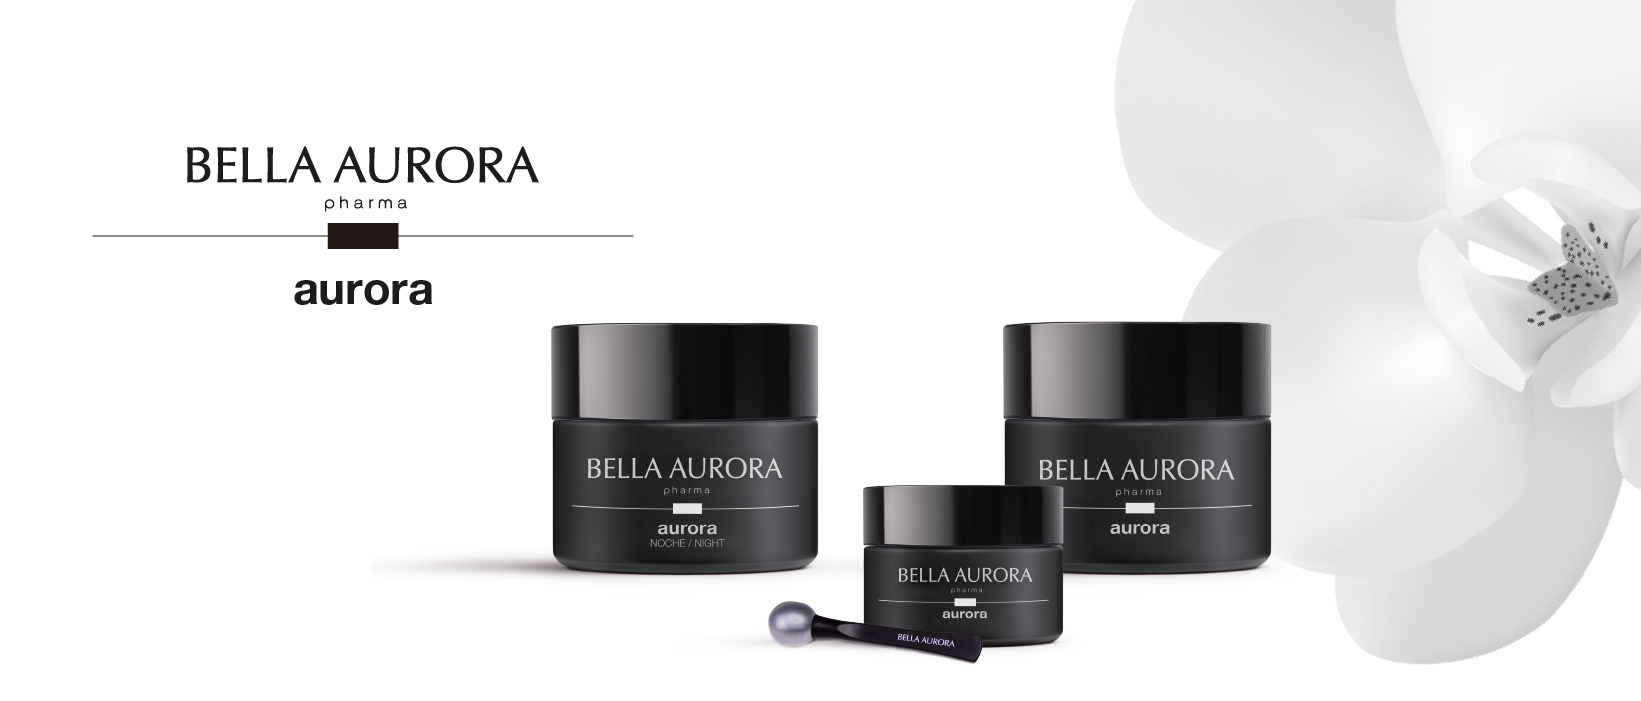 Tratamiento Antiedad Aurora +60 para piel madura | Bella Aurora